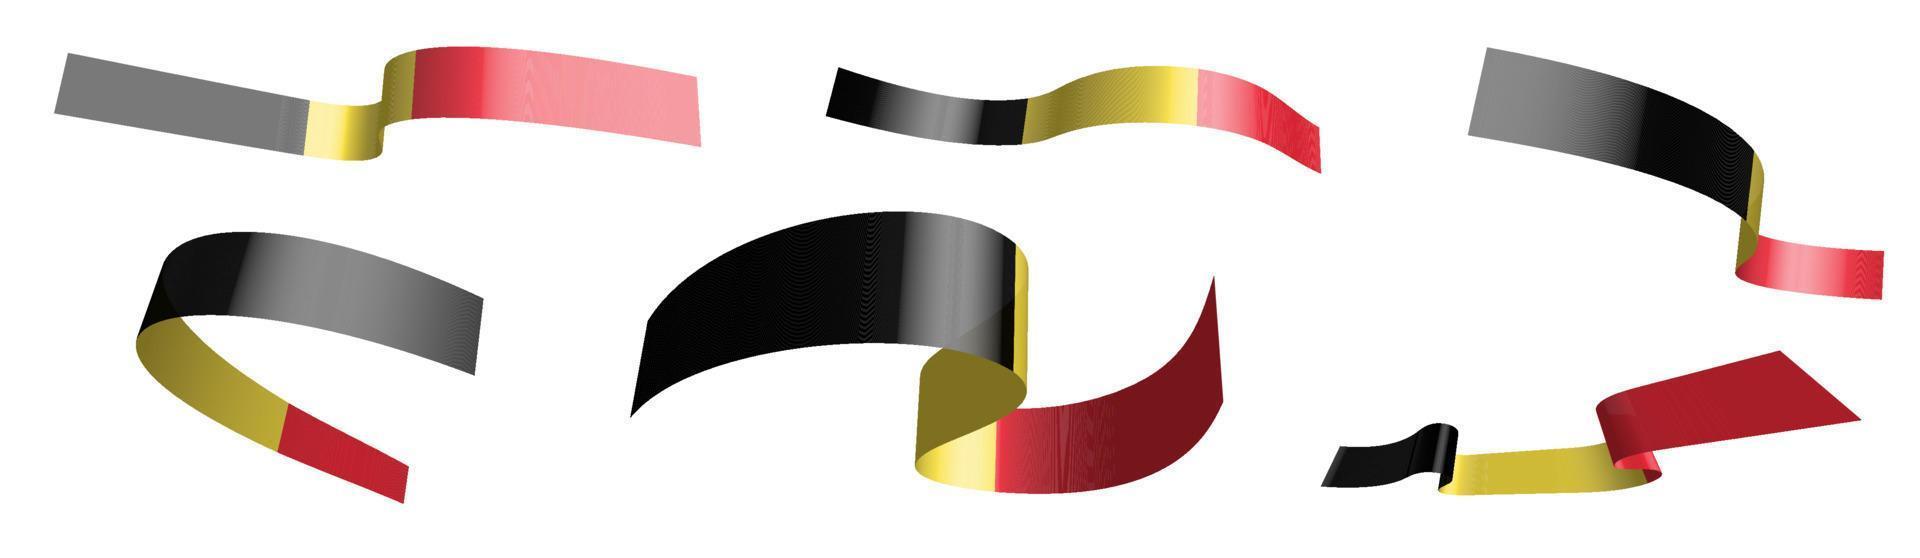 uppsättning semesterband. Belgiens flagga vajar i vinden. separering i nedre och övre skikt. designelement. vektor på vit bakgrund